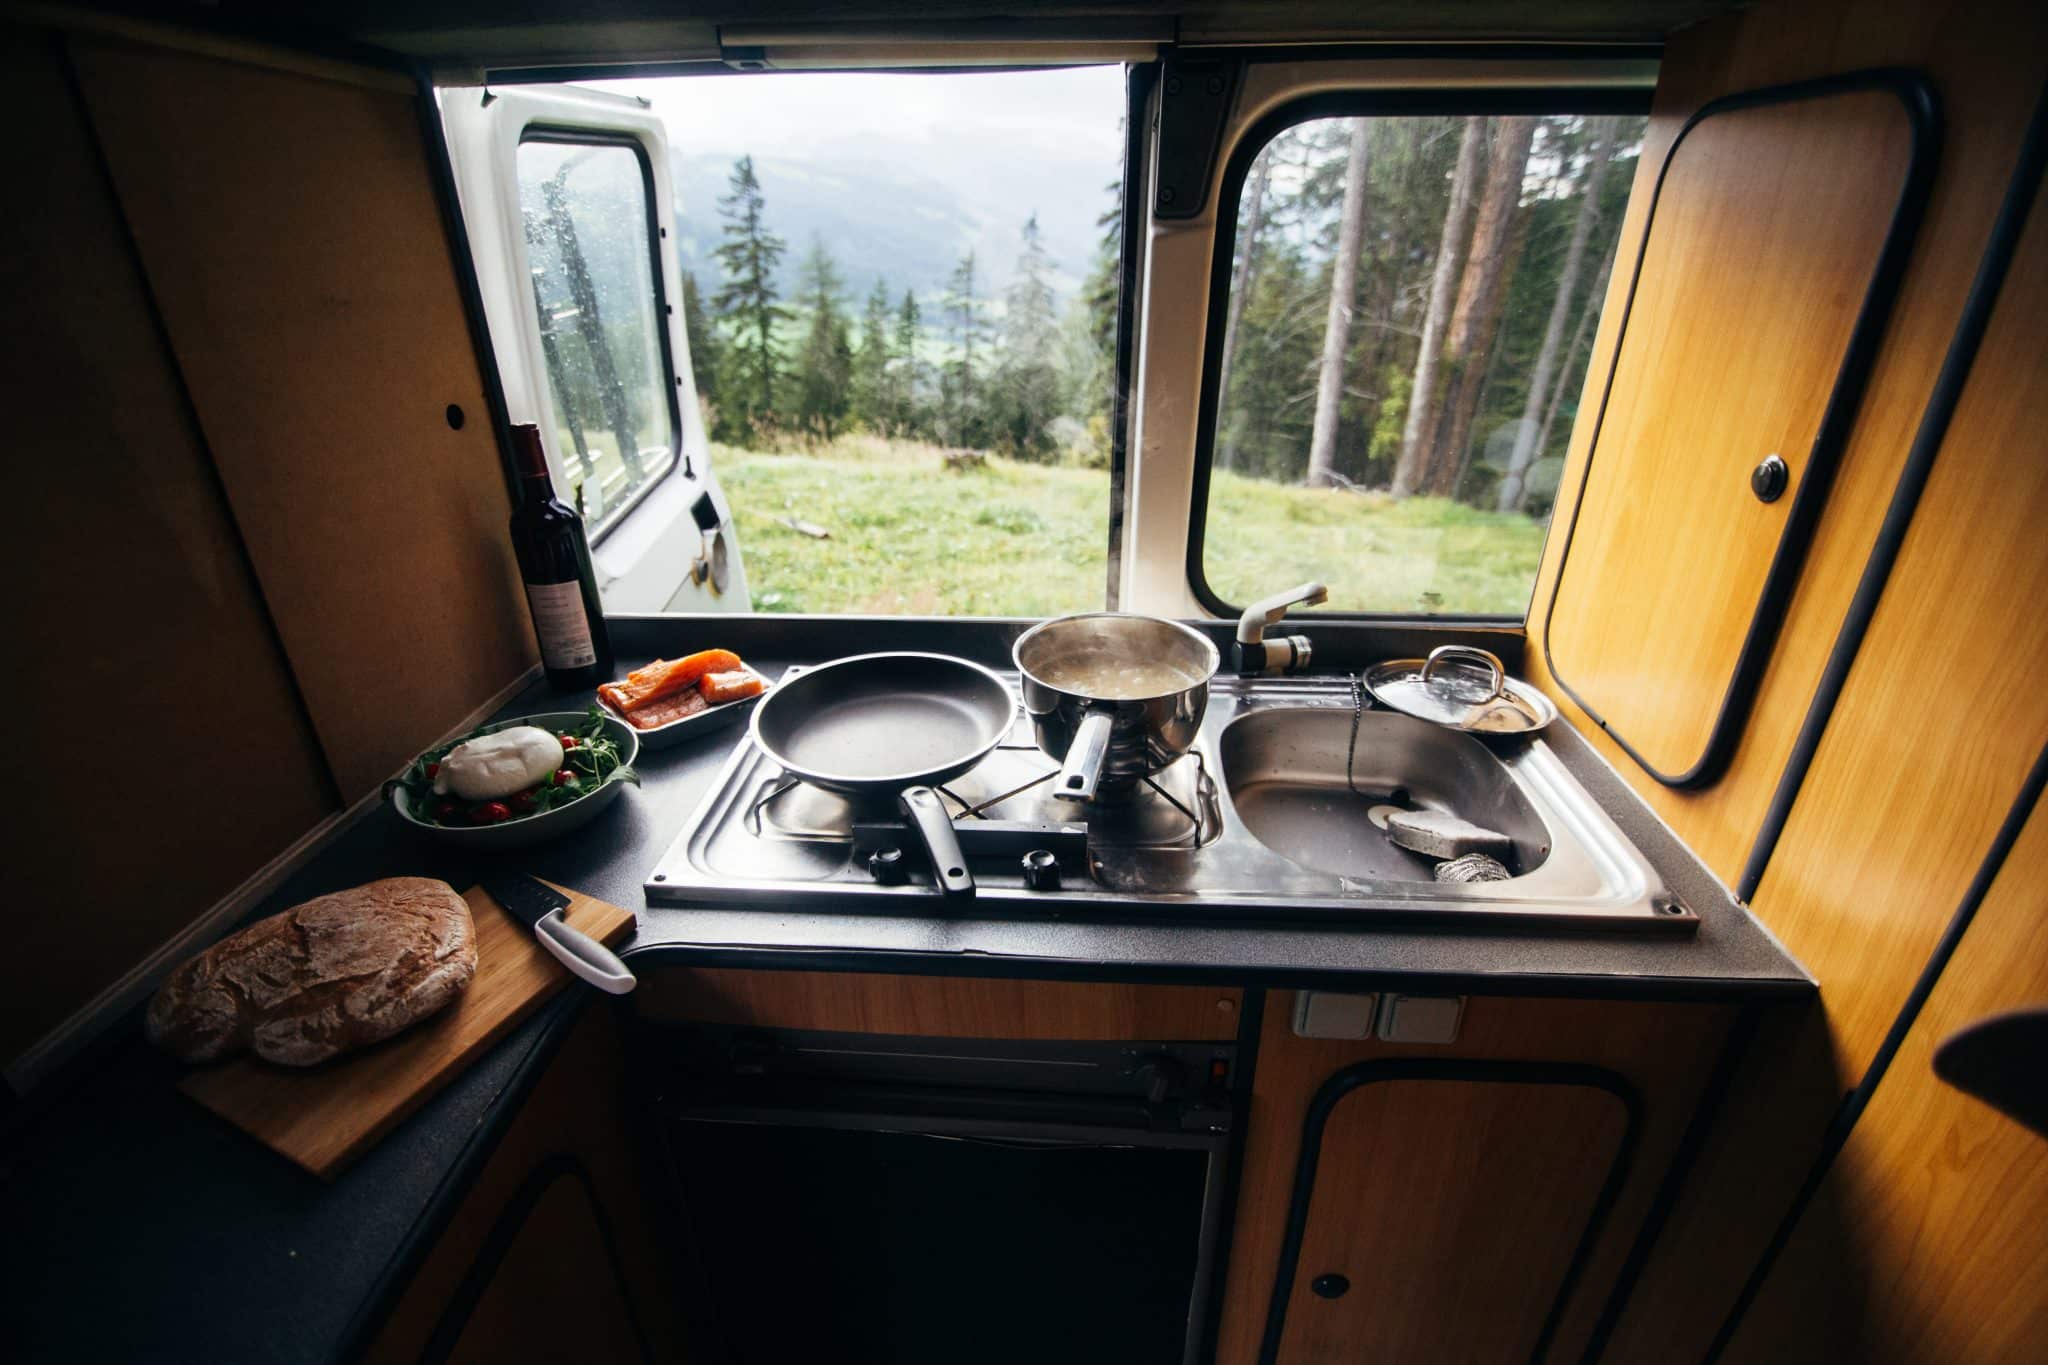 Penser à la cuisine quand on aménage une van dans notre article 5 étapes pour aménager une van pour un road trip au Canada #van #aménagervan #canada #roadtrip #décorervan